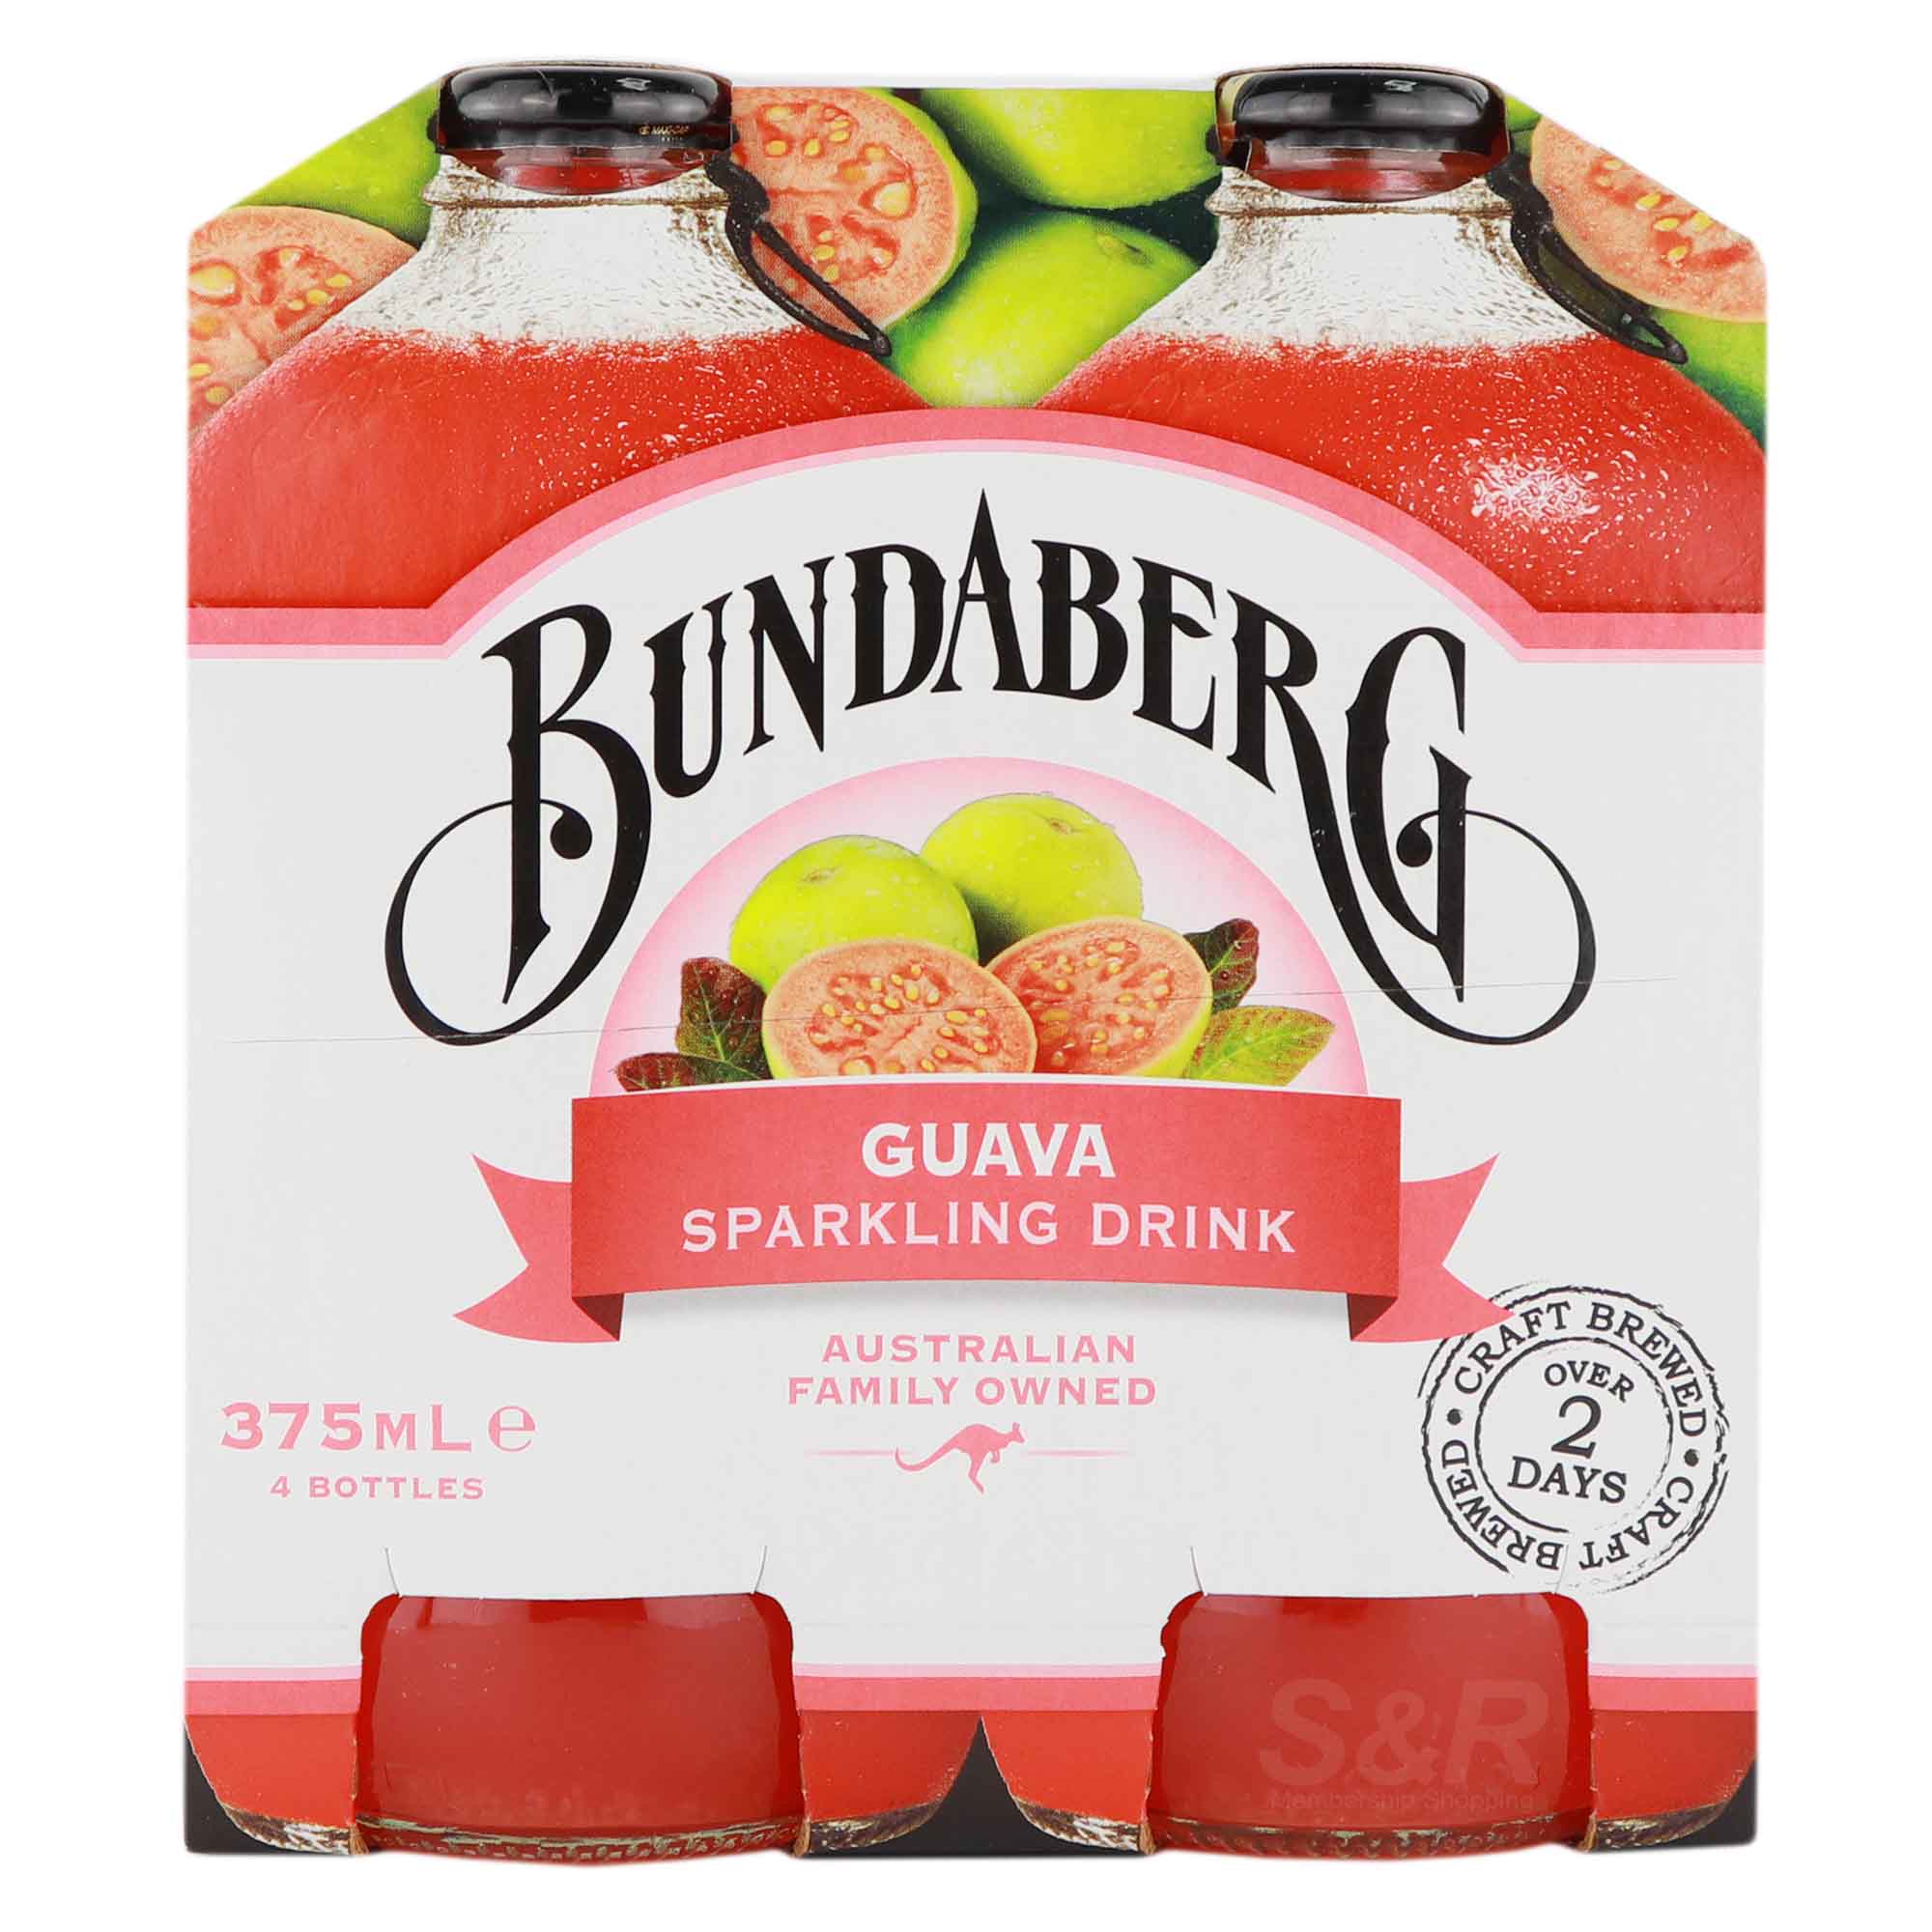 Bundaberg Guava Sparkling Drink 4 bottles